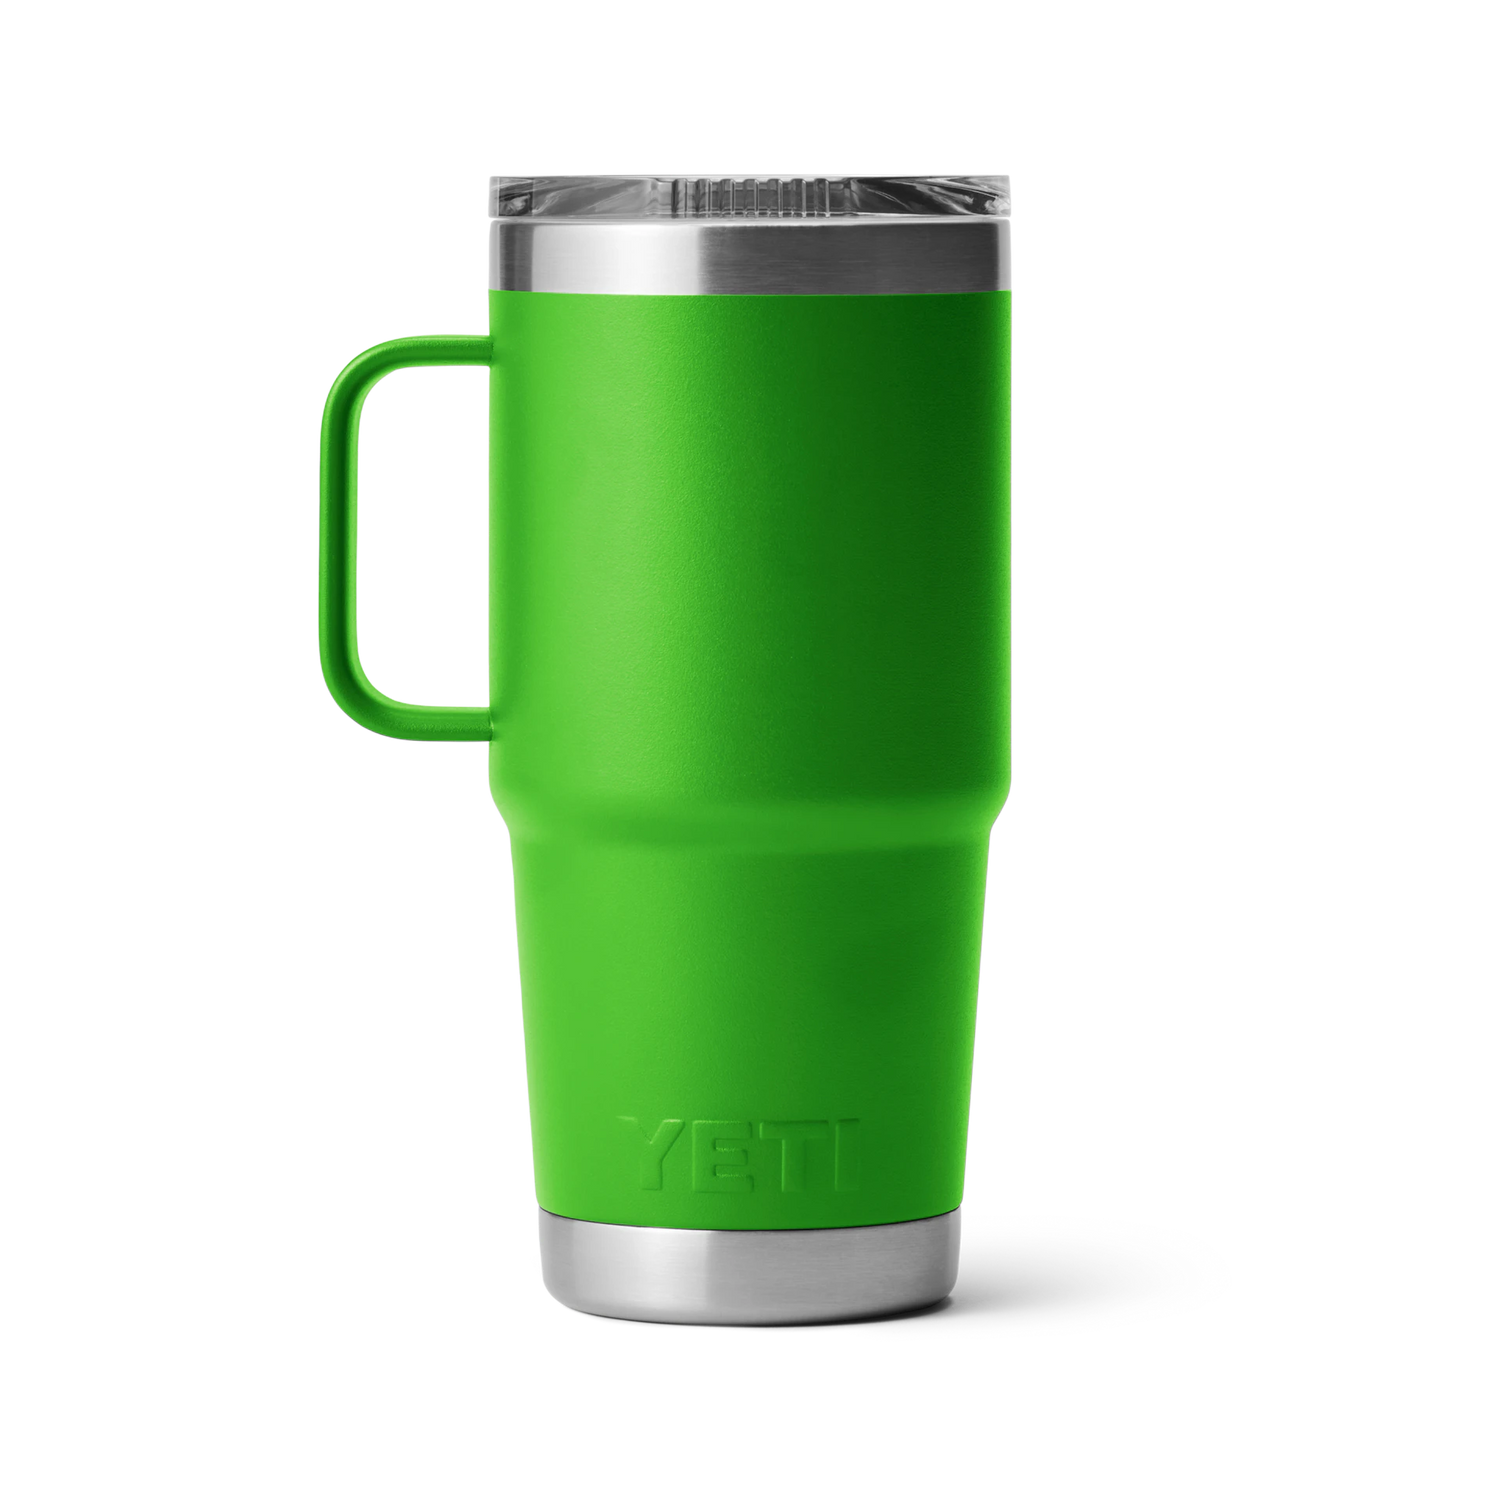 Yeti Rambler Canopy Green 20oz Travel Mug